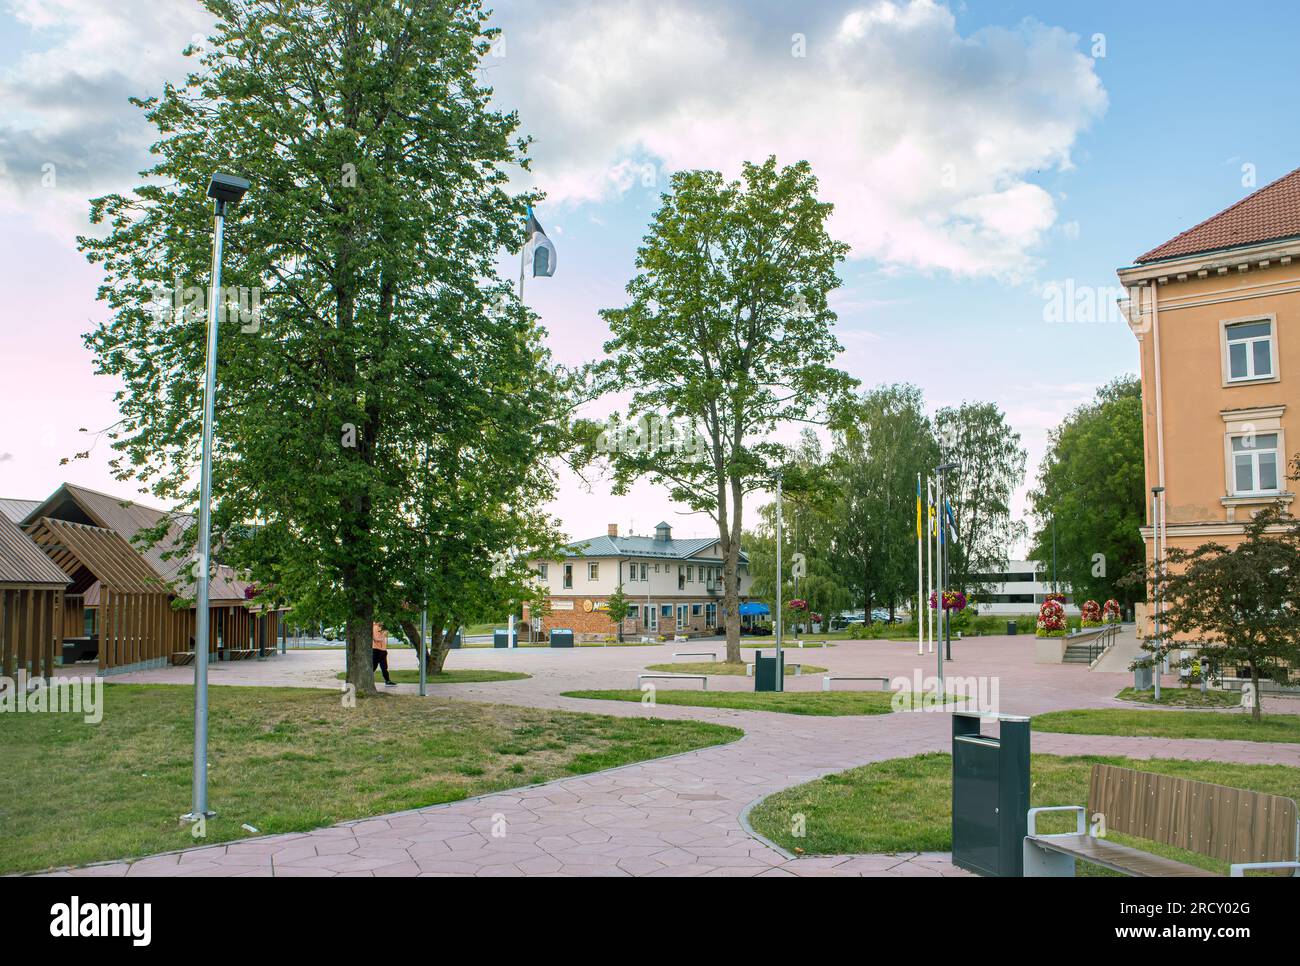 Otepää, Condado de Valga, Estonia-14JUL2023: Plaza principal de la ciudad de Otepää u Otepaa en Estonia, Europa. Parque público de la zona de ocio. Foto de stock